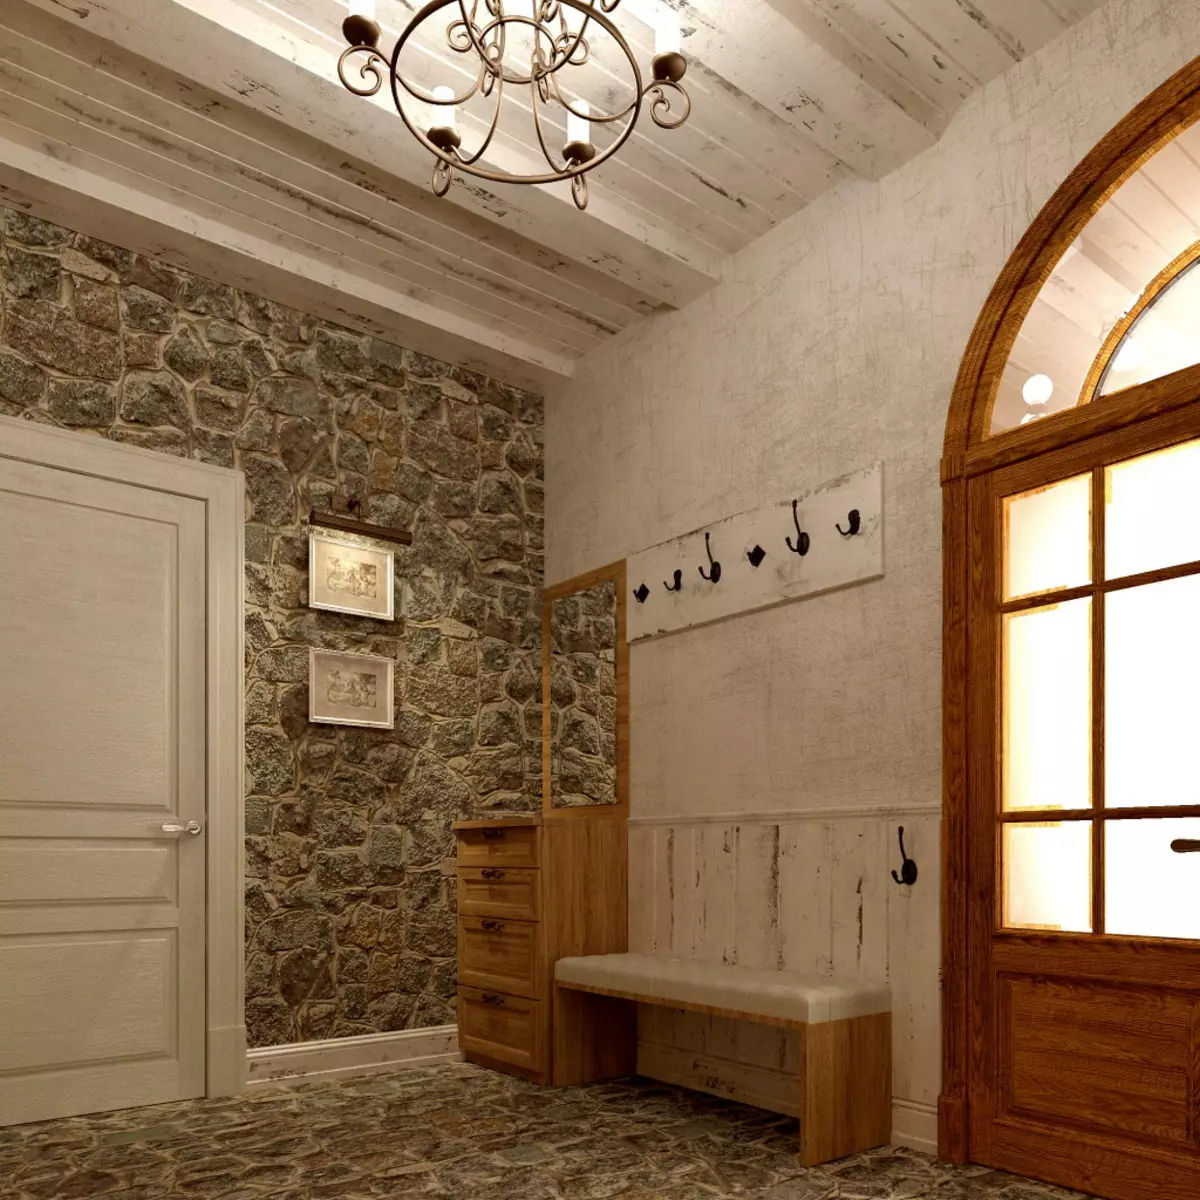 Hala ve stylu Provence (74 fotek): Interiér koridoru v bílých a jiných barvách, návrh skříně a dalšího nábytku ve stylu Provence 9279_11